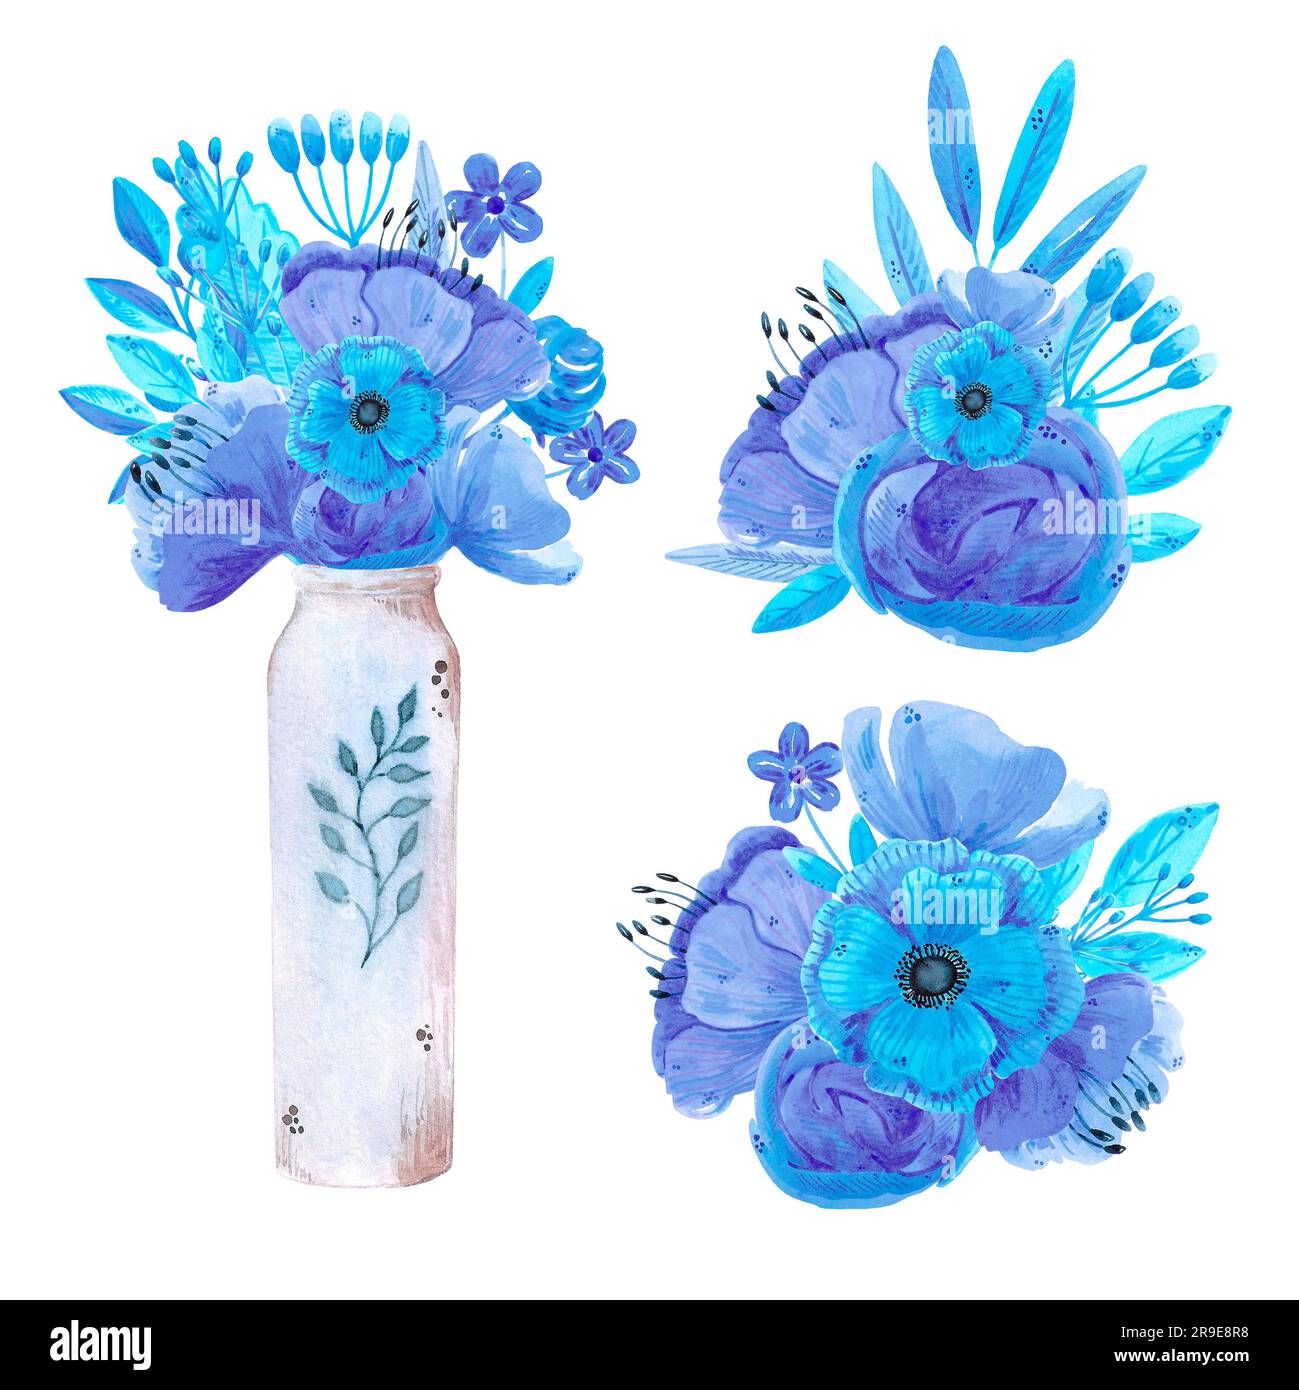 Acquerello disegnato a mano fiori blu e foglie bouquet in un vaso. Isolato su bianco. Può essere utilizzato per schede, modelli, inviti, etichette Foto Stock